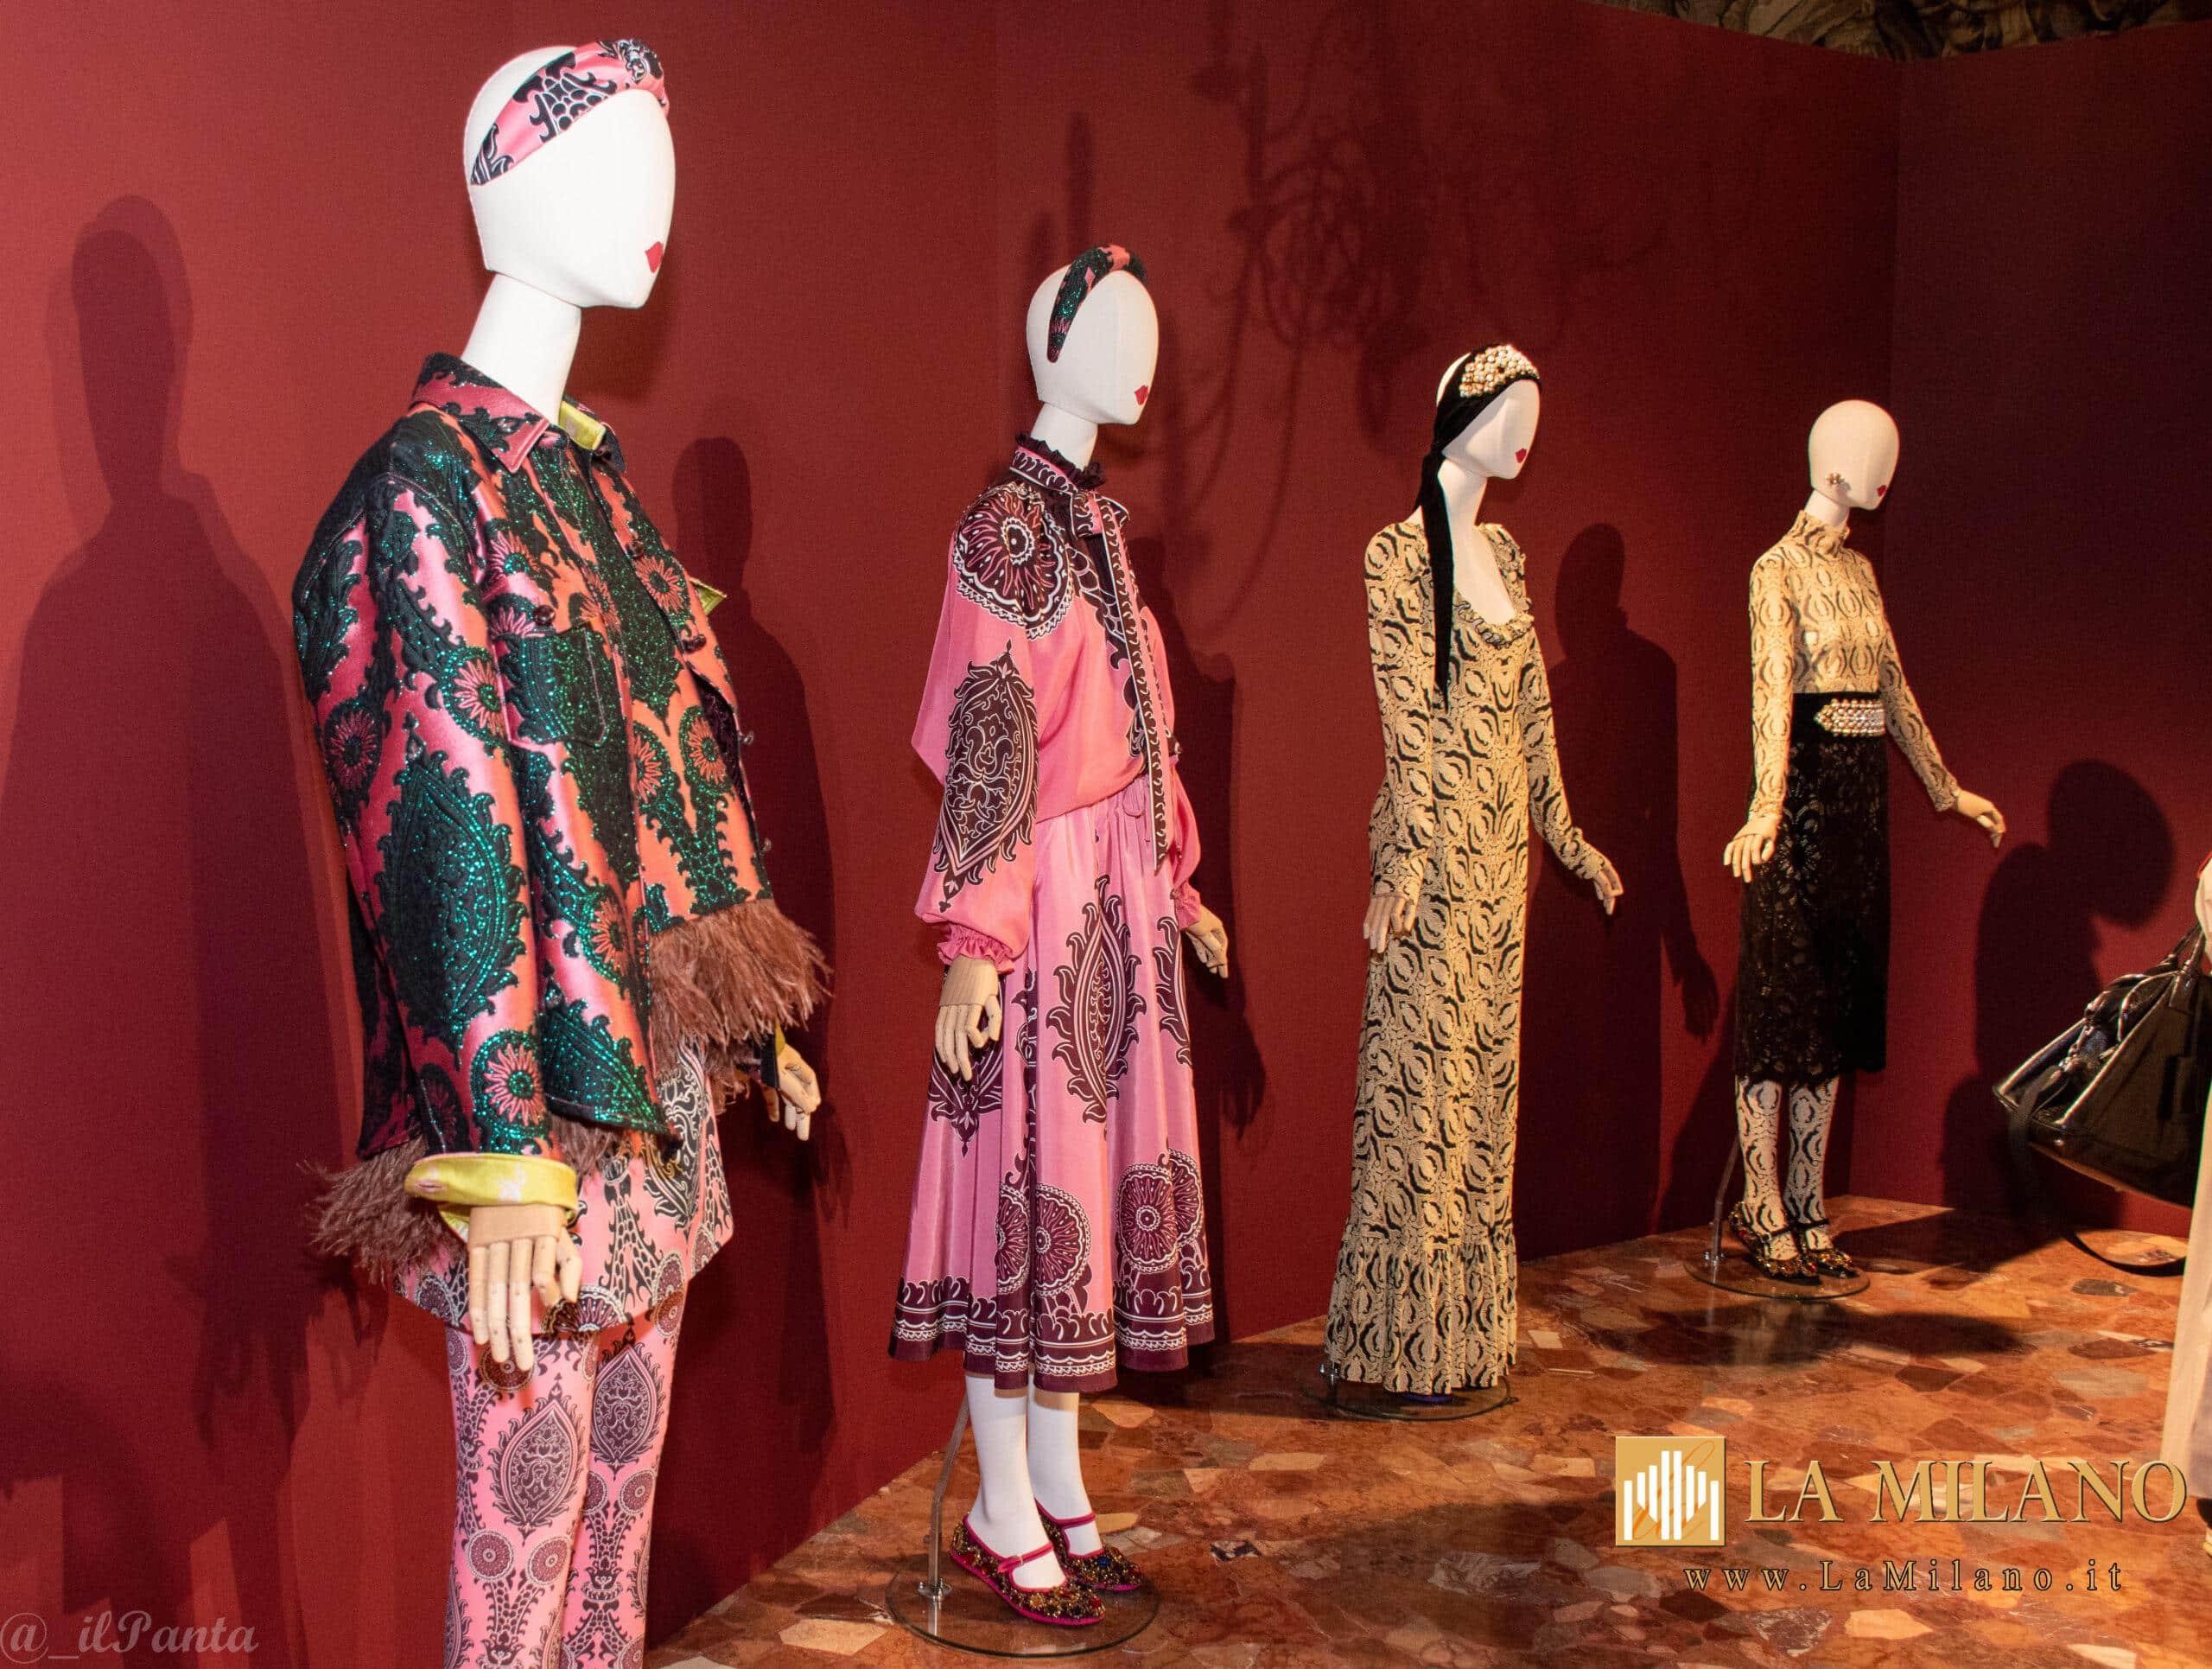 LaDoubleJ trasporta la moda nel Rinascimento con la sua collezione ispirata al periodo d'oro dell'arte e della cultura italiana